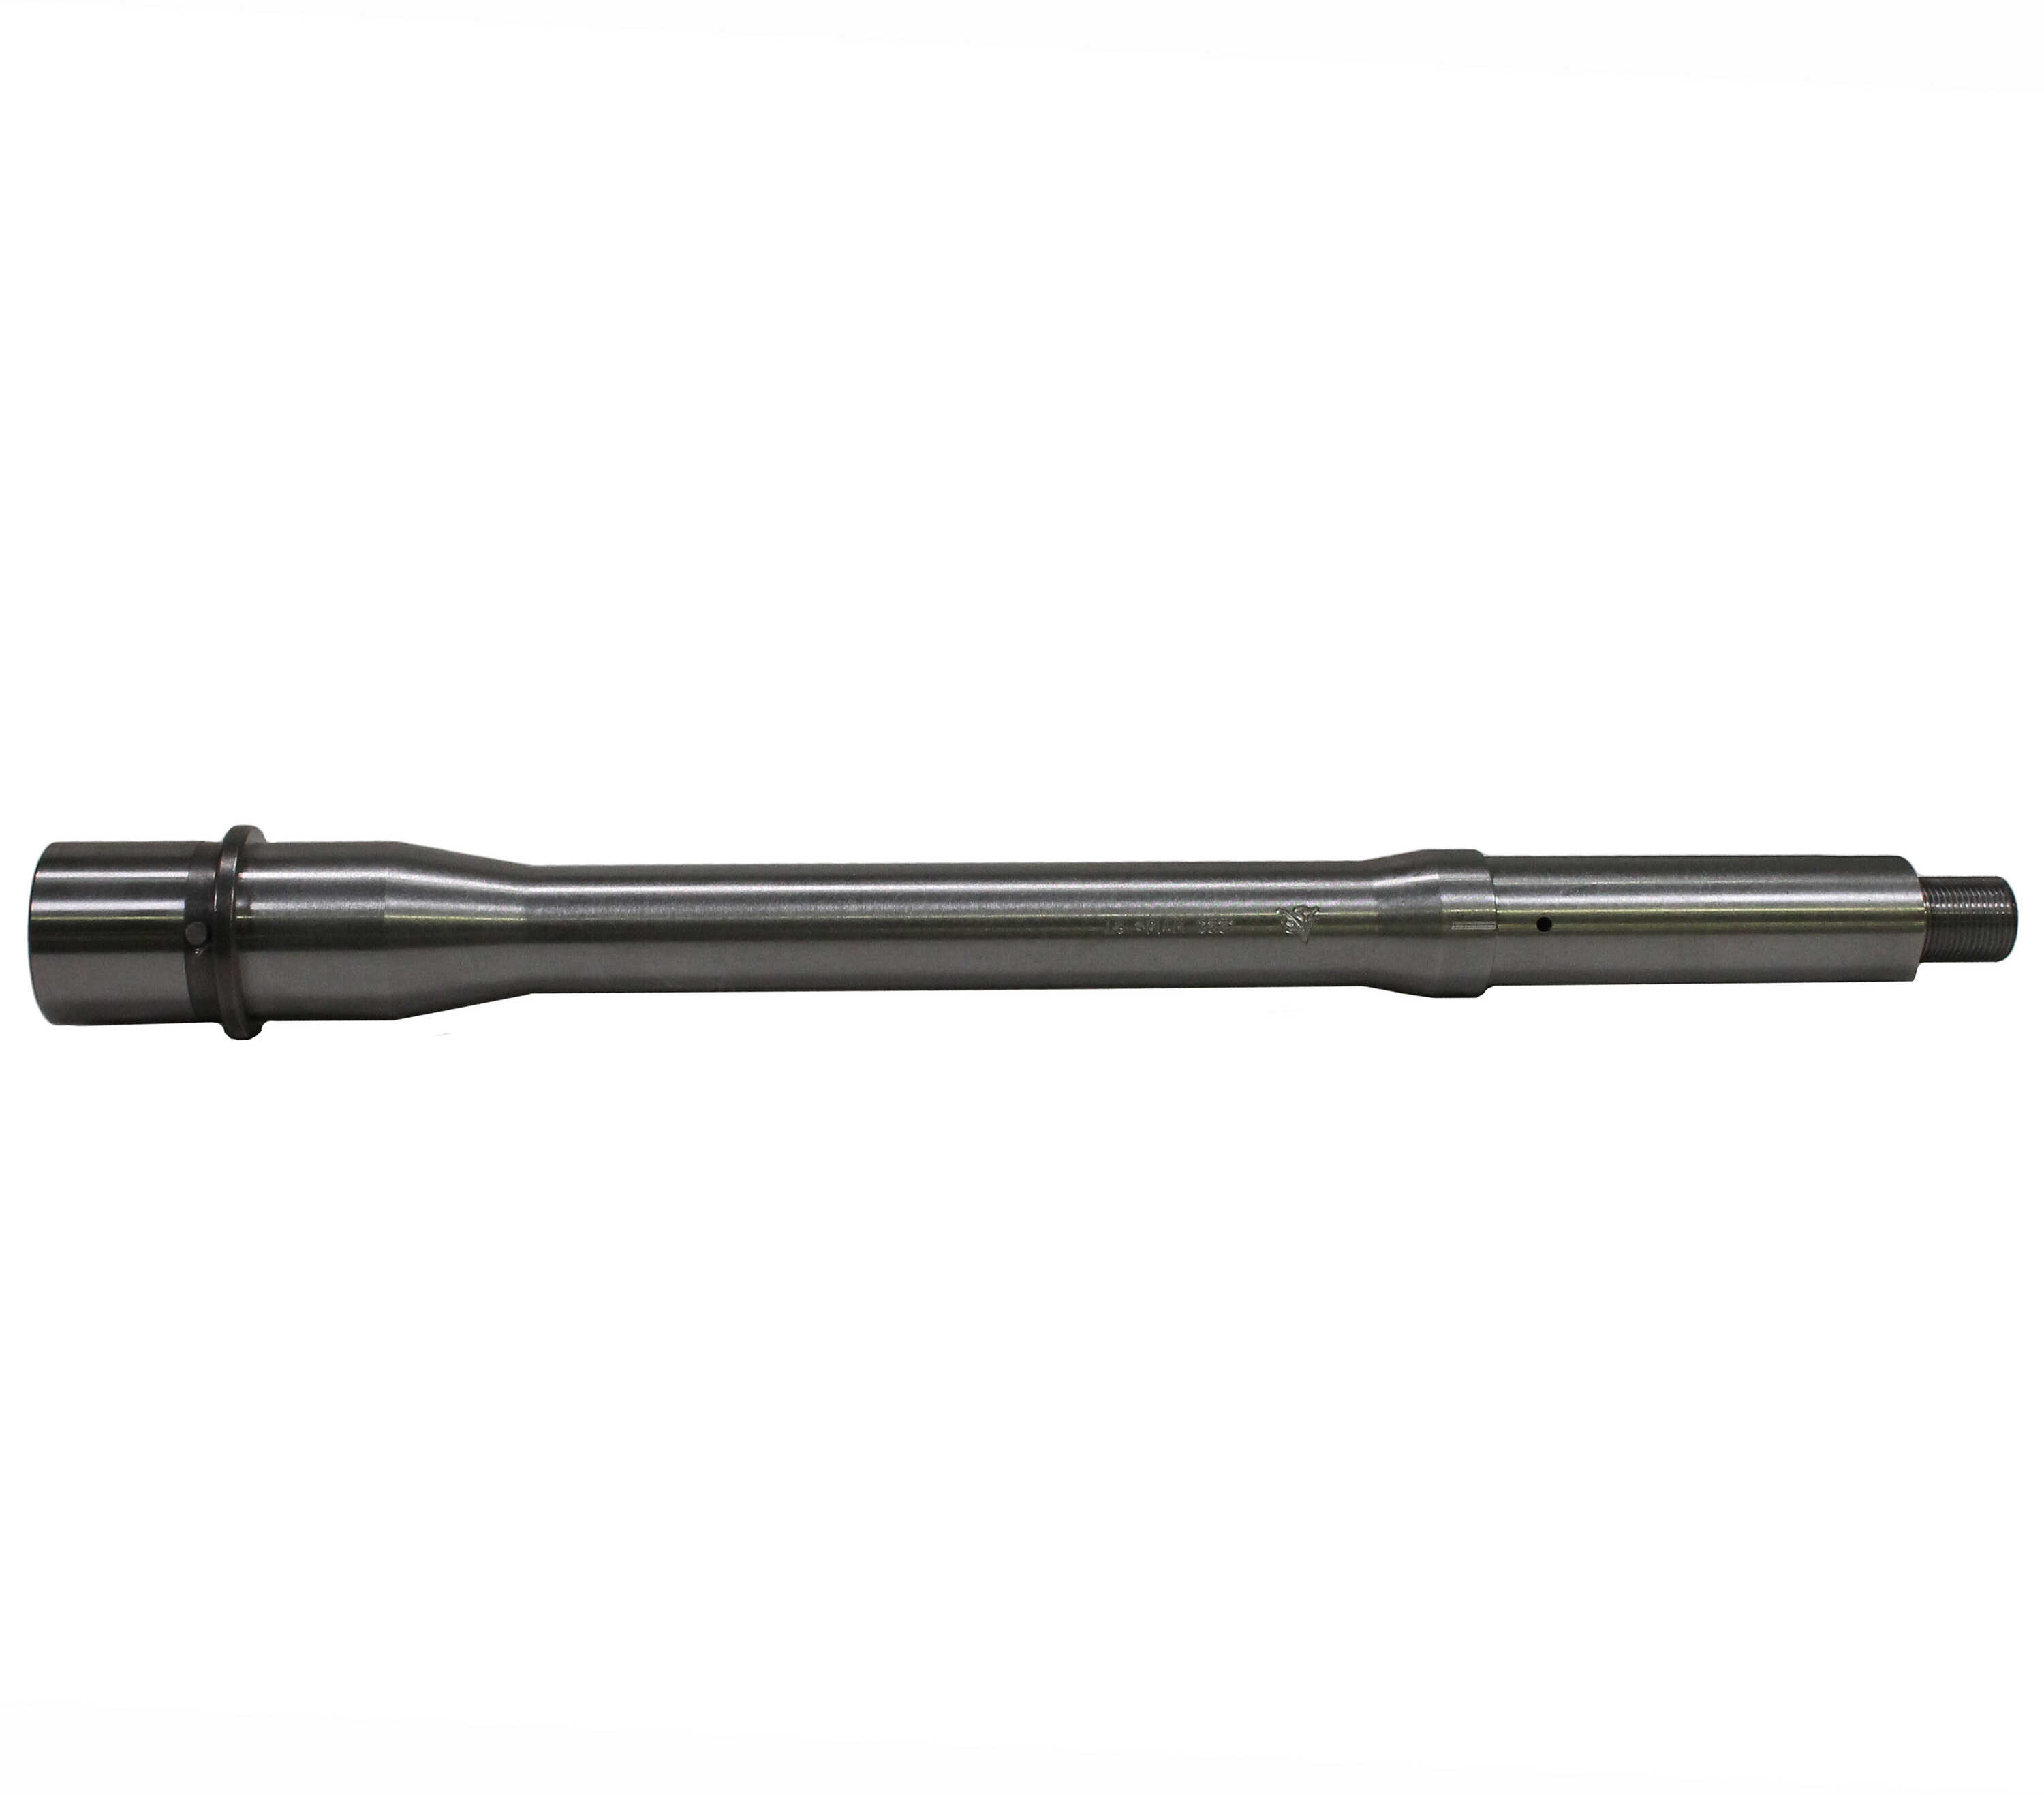 Odin Barrel Pistol .223 WYLDE 10.5" Medium Profile Carbine